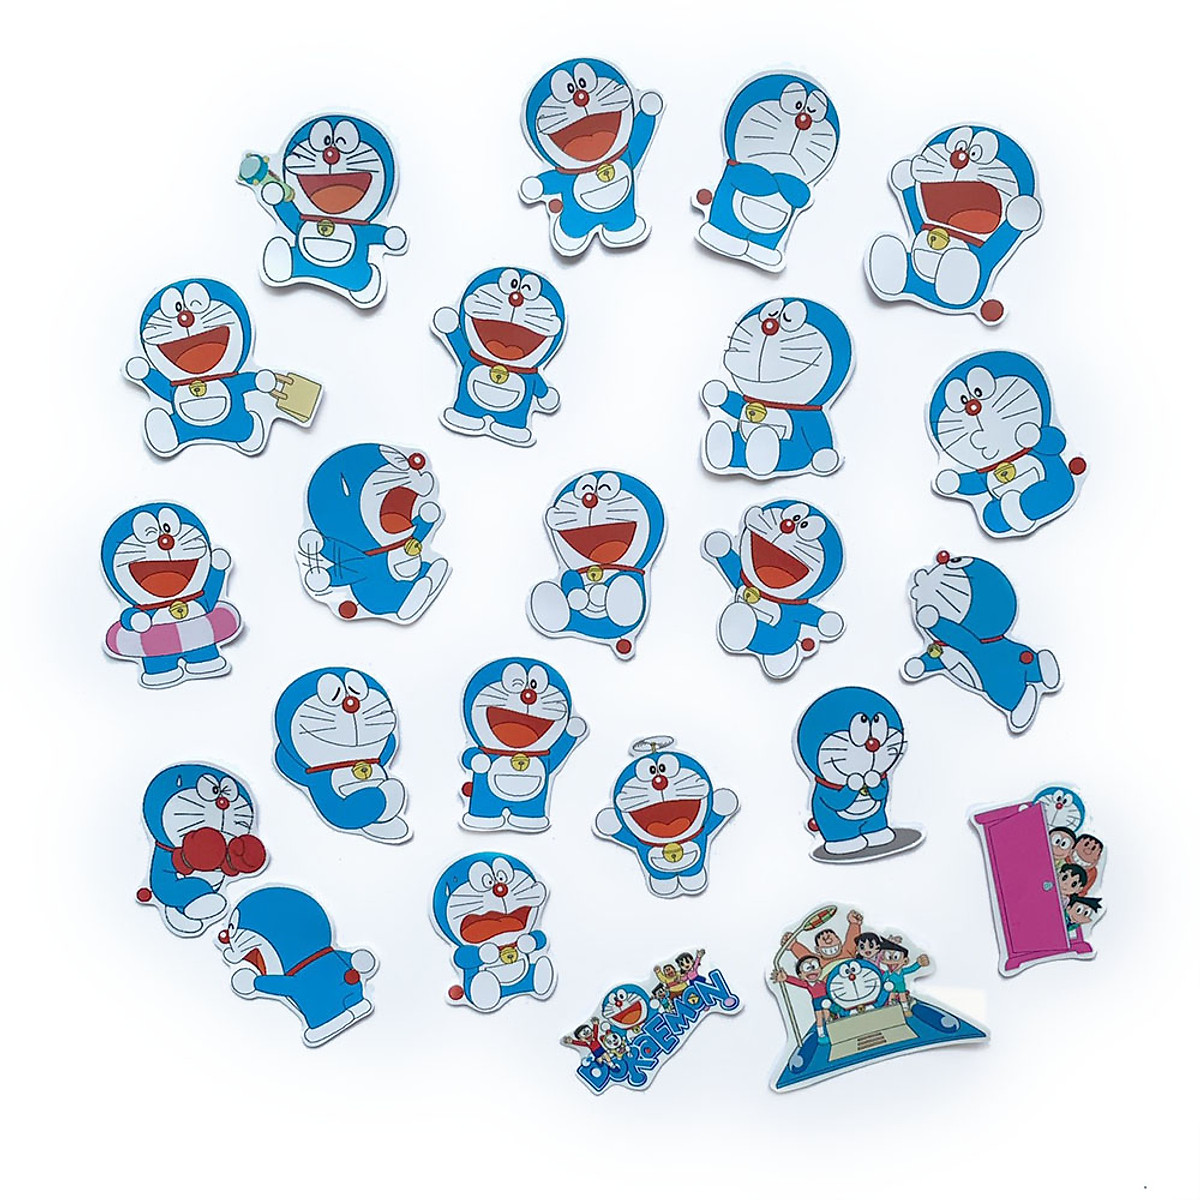 Sticker Doraemon 2024 sẽ là một sản phẩm tinh tế, sáng tạo cho các bạn trẻ yêu thích Doraemon. Với nhiều mẫu mã và hình ảnh độc đáo, Sticker Doraemon 2024 sẽ giúp bạn tạo ra những bức ảnh độc đáo và thú vị.